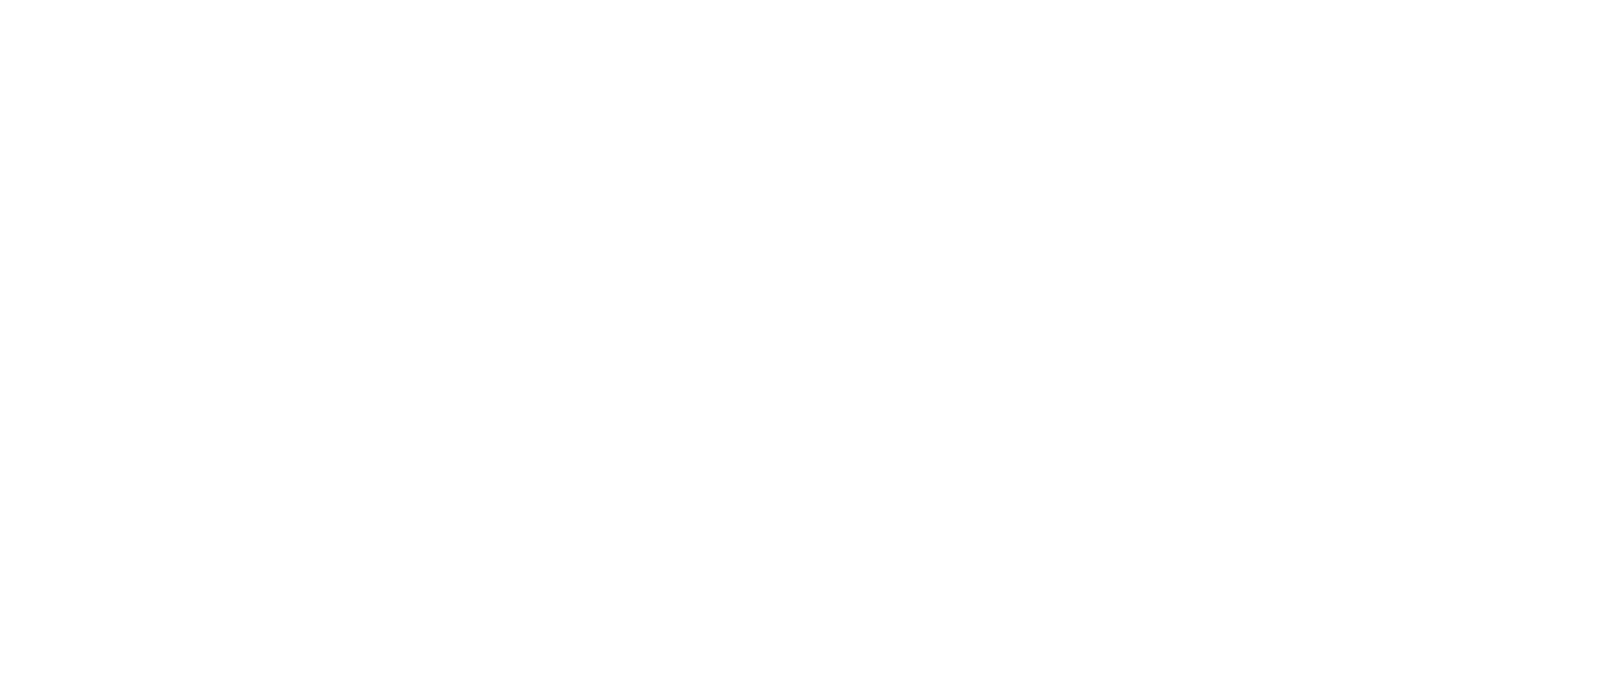 Wellness Weekend logo - Altaplaza Mall